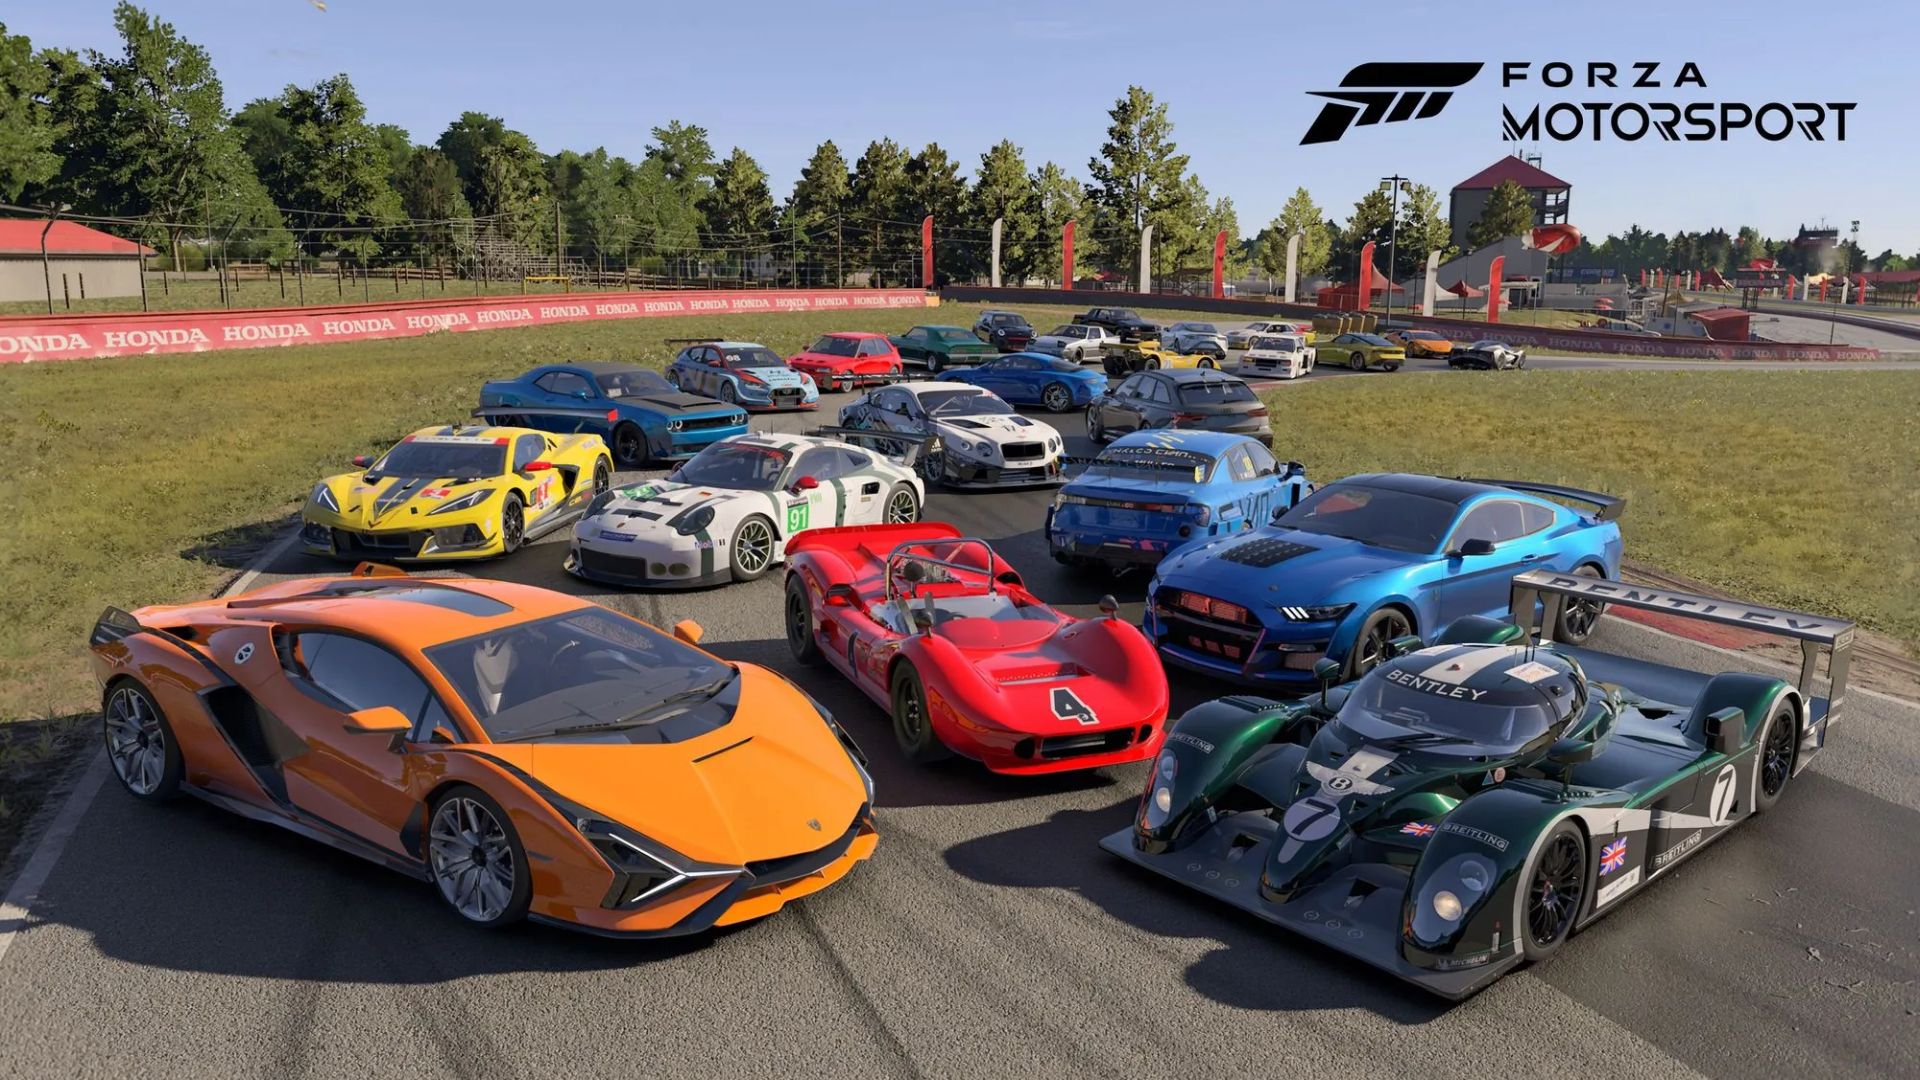 ผู้เล่น Forza Motorsport ที่ซื้อชุด Premium Edition เข้าเล่นได้ล่วงหน้า 5 วันก่อนเกมเปิดตัว